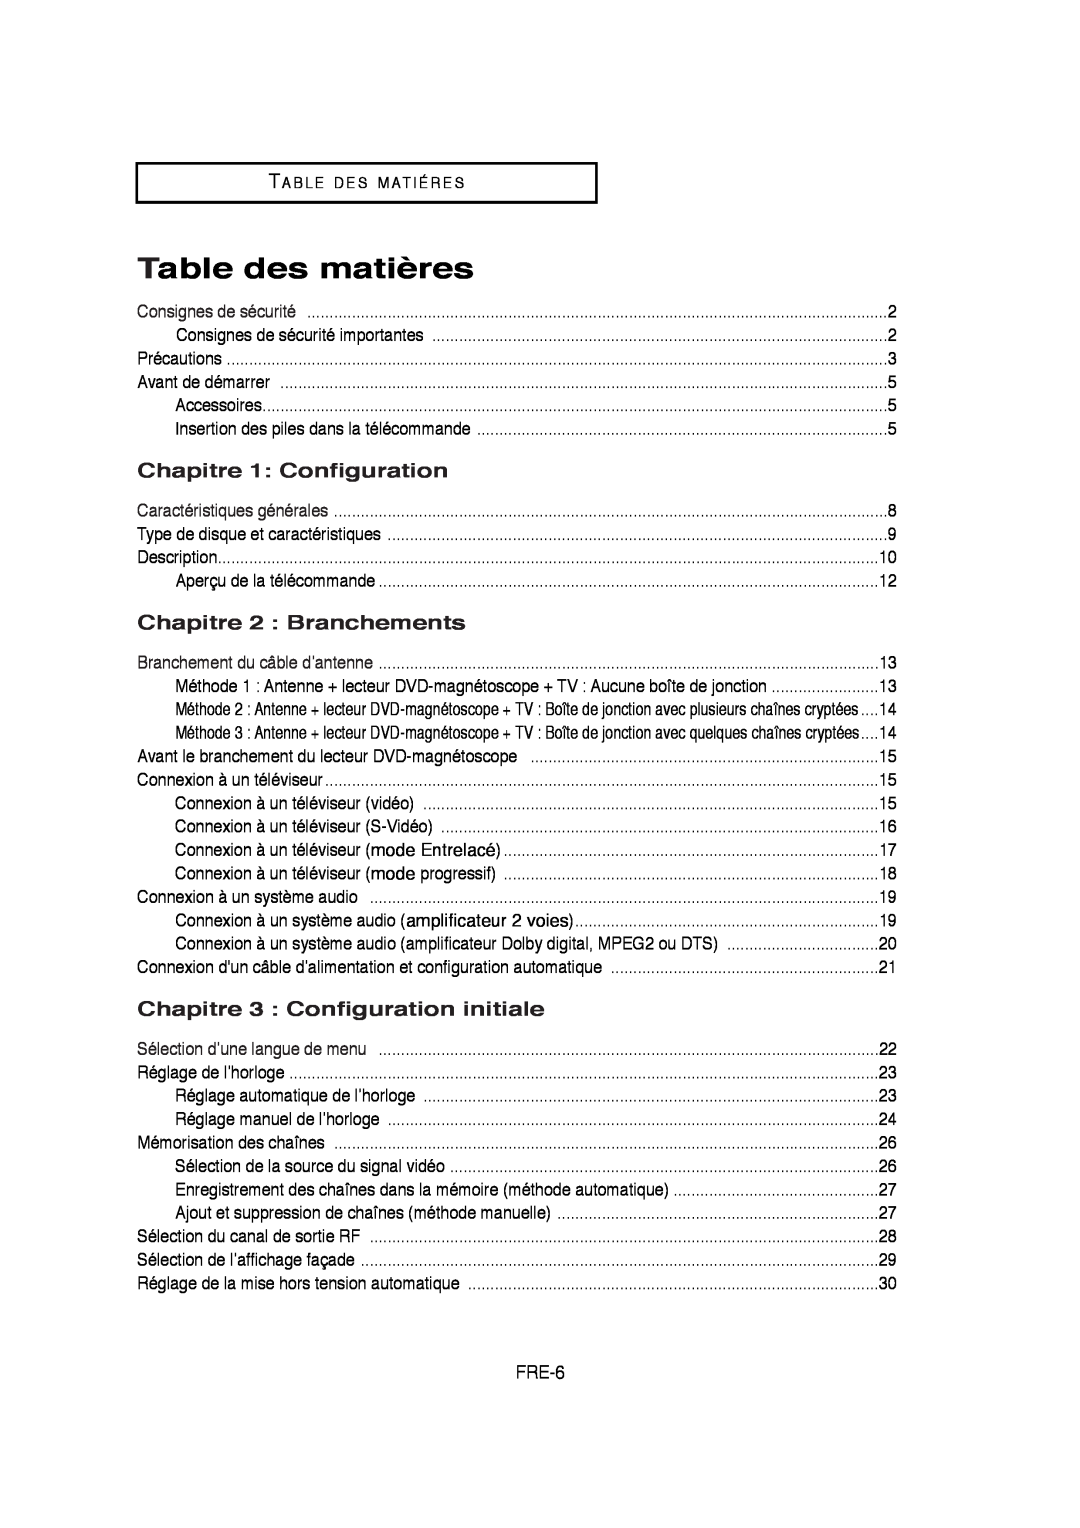 Samsung 01304A Table des matières, Chapitre 1 Configuration, Chapitre 2 Branchements, Chapitre 3 Configuration initiale 